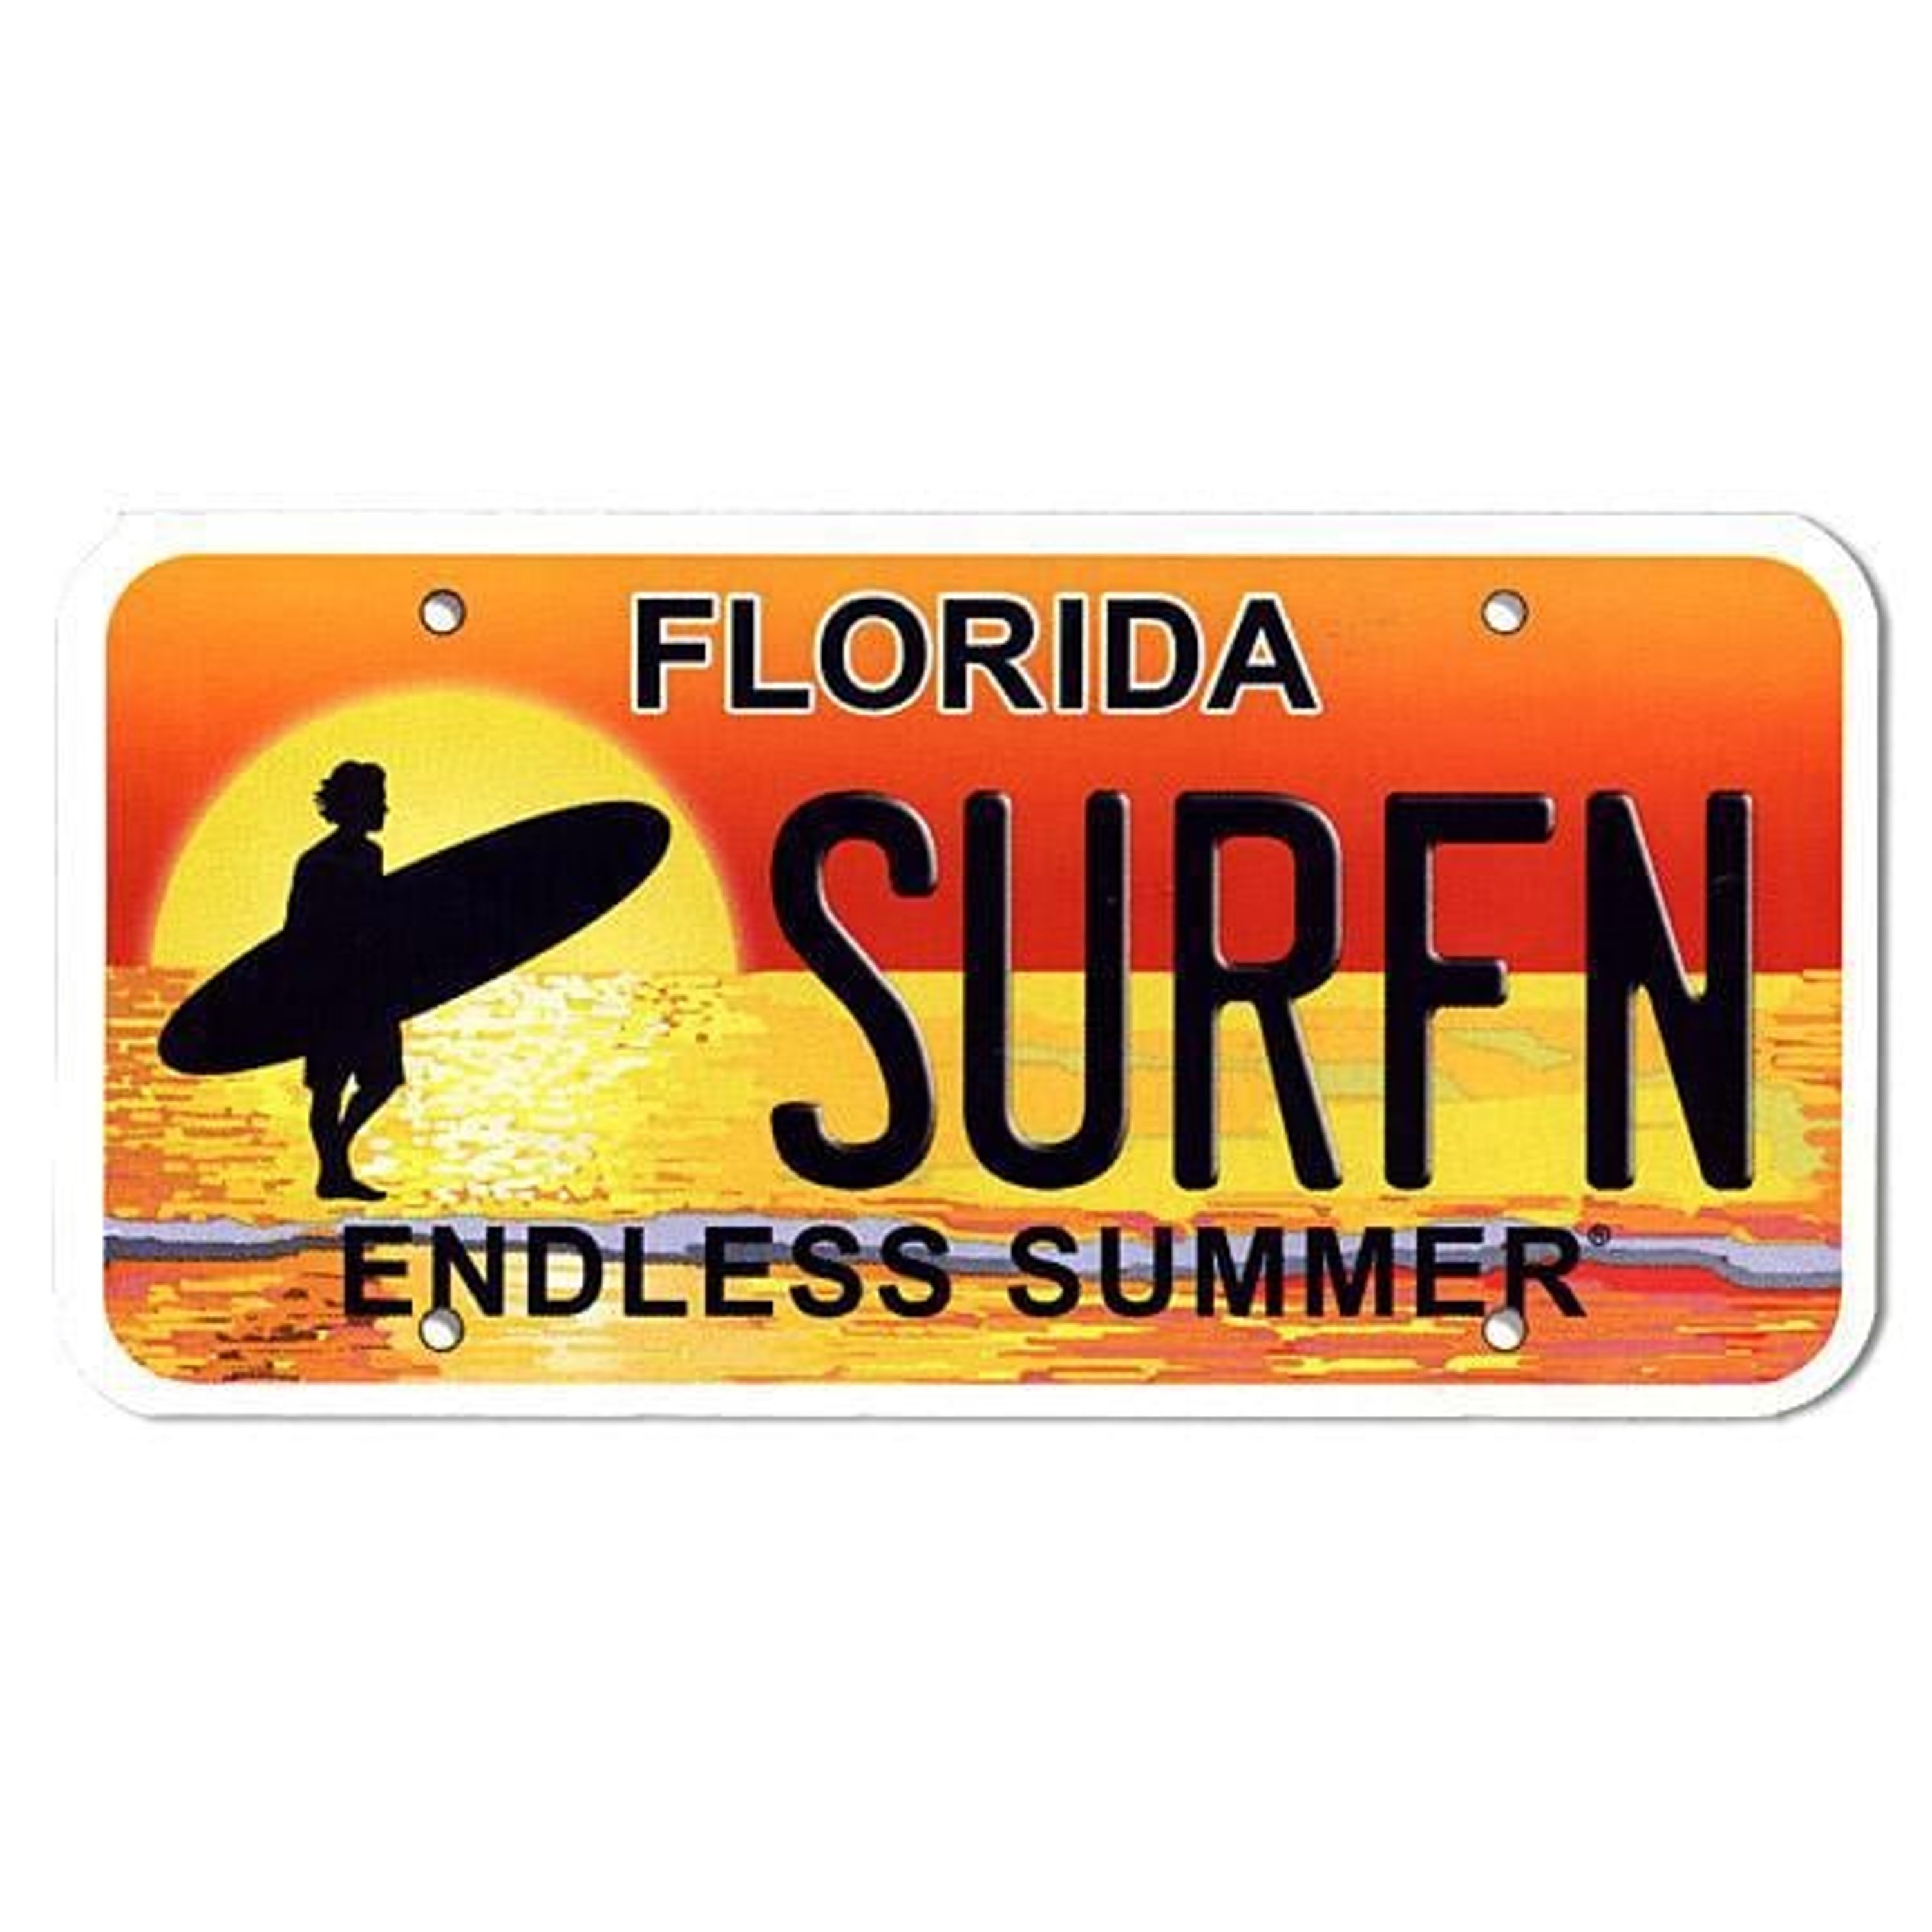 Endless Summer Sticker - Surf Stickers